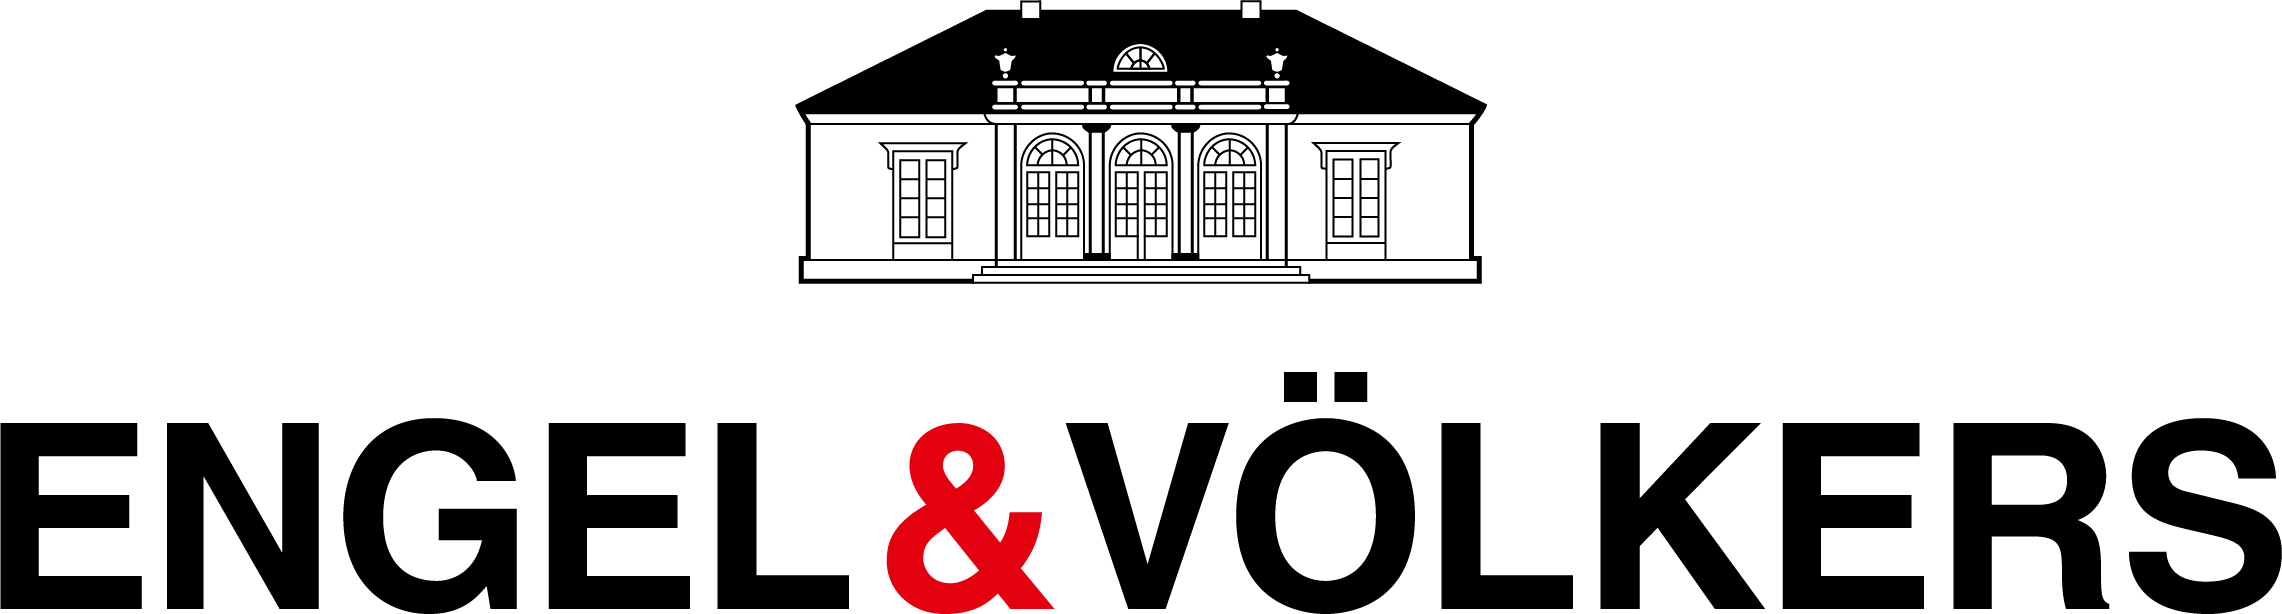 ENGEL & VÖLKERS Logo